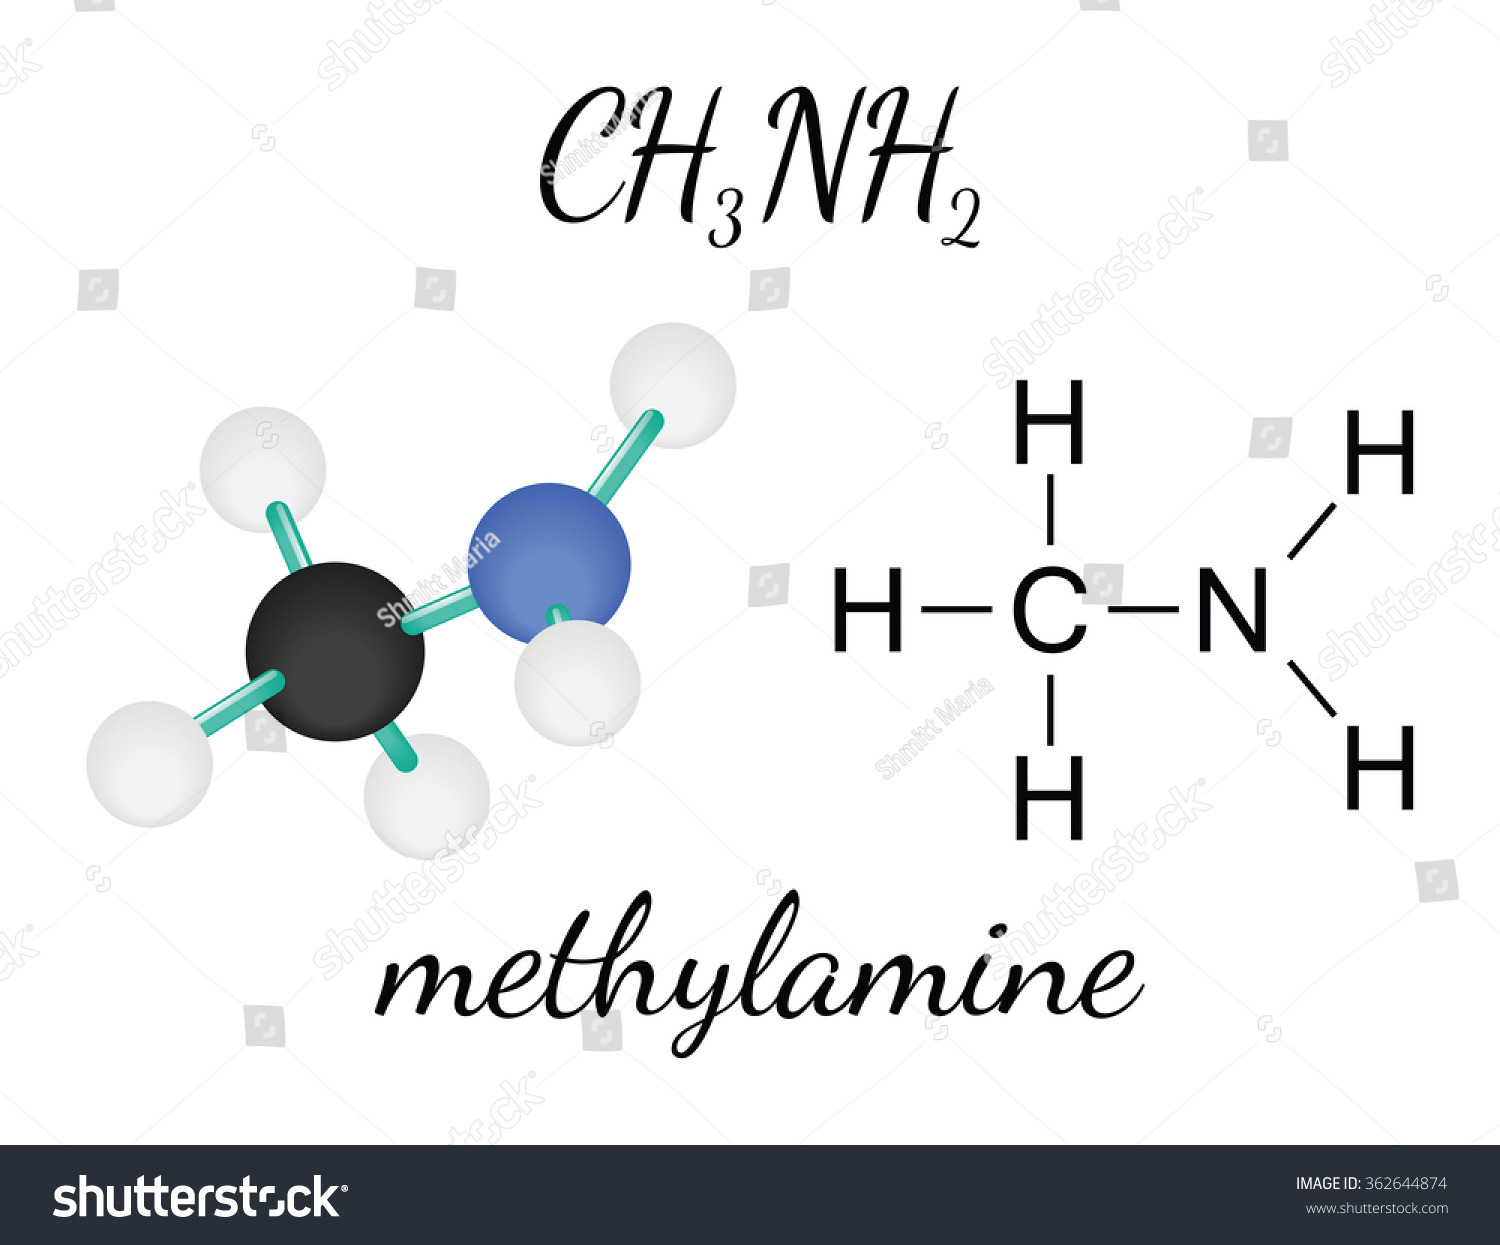 Ch3nh2 Methylamine Molecule Stock Vector Royalty Free 362644874